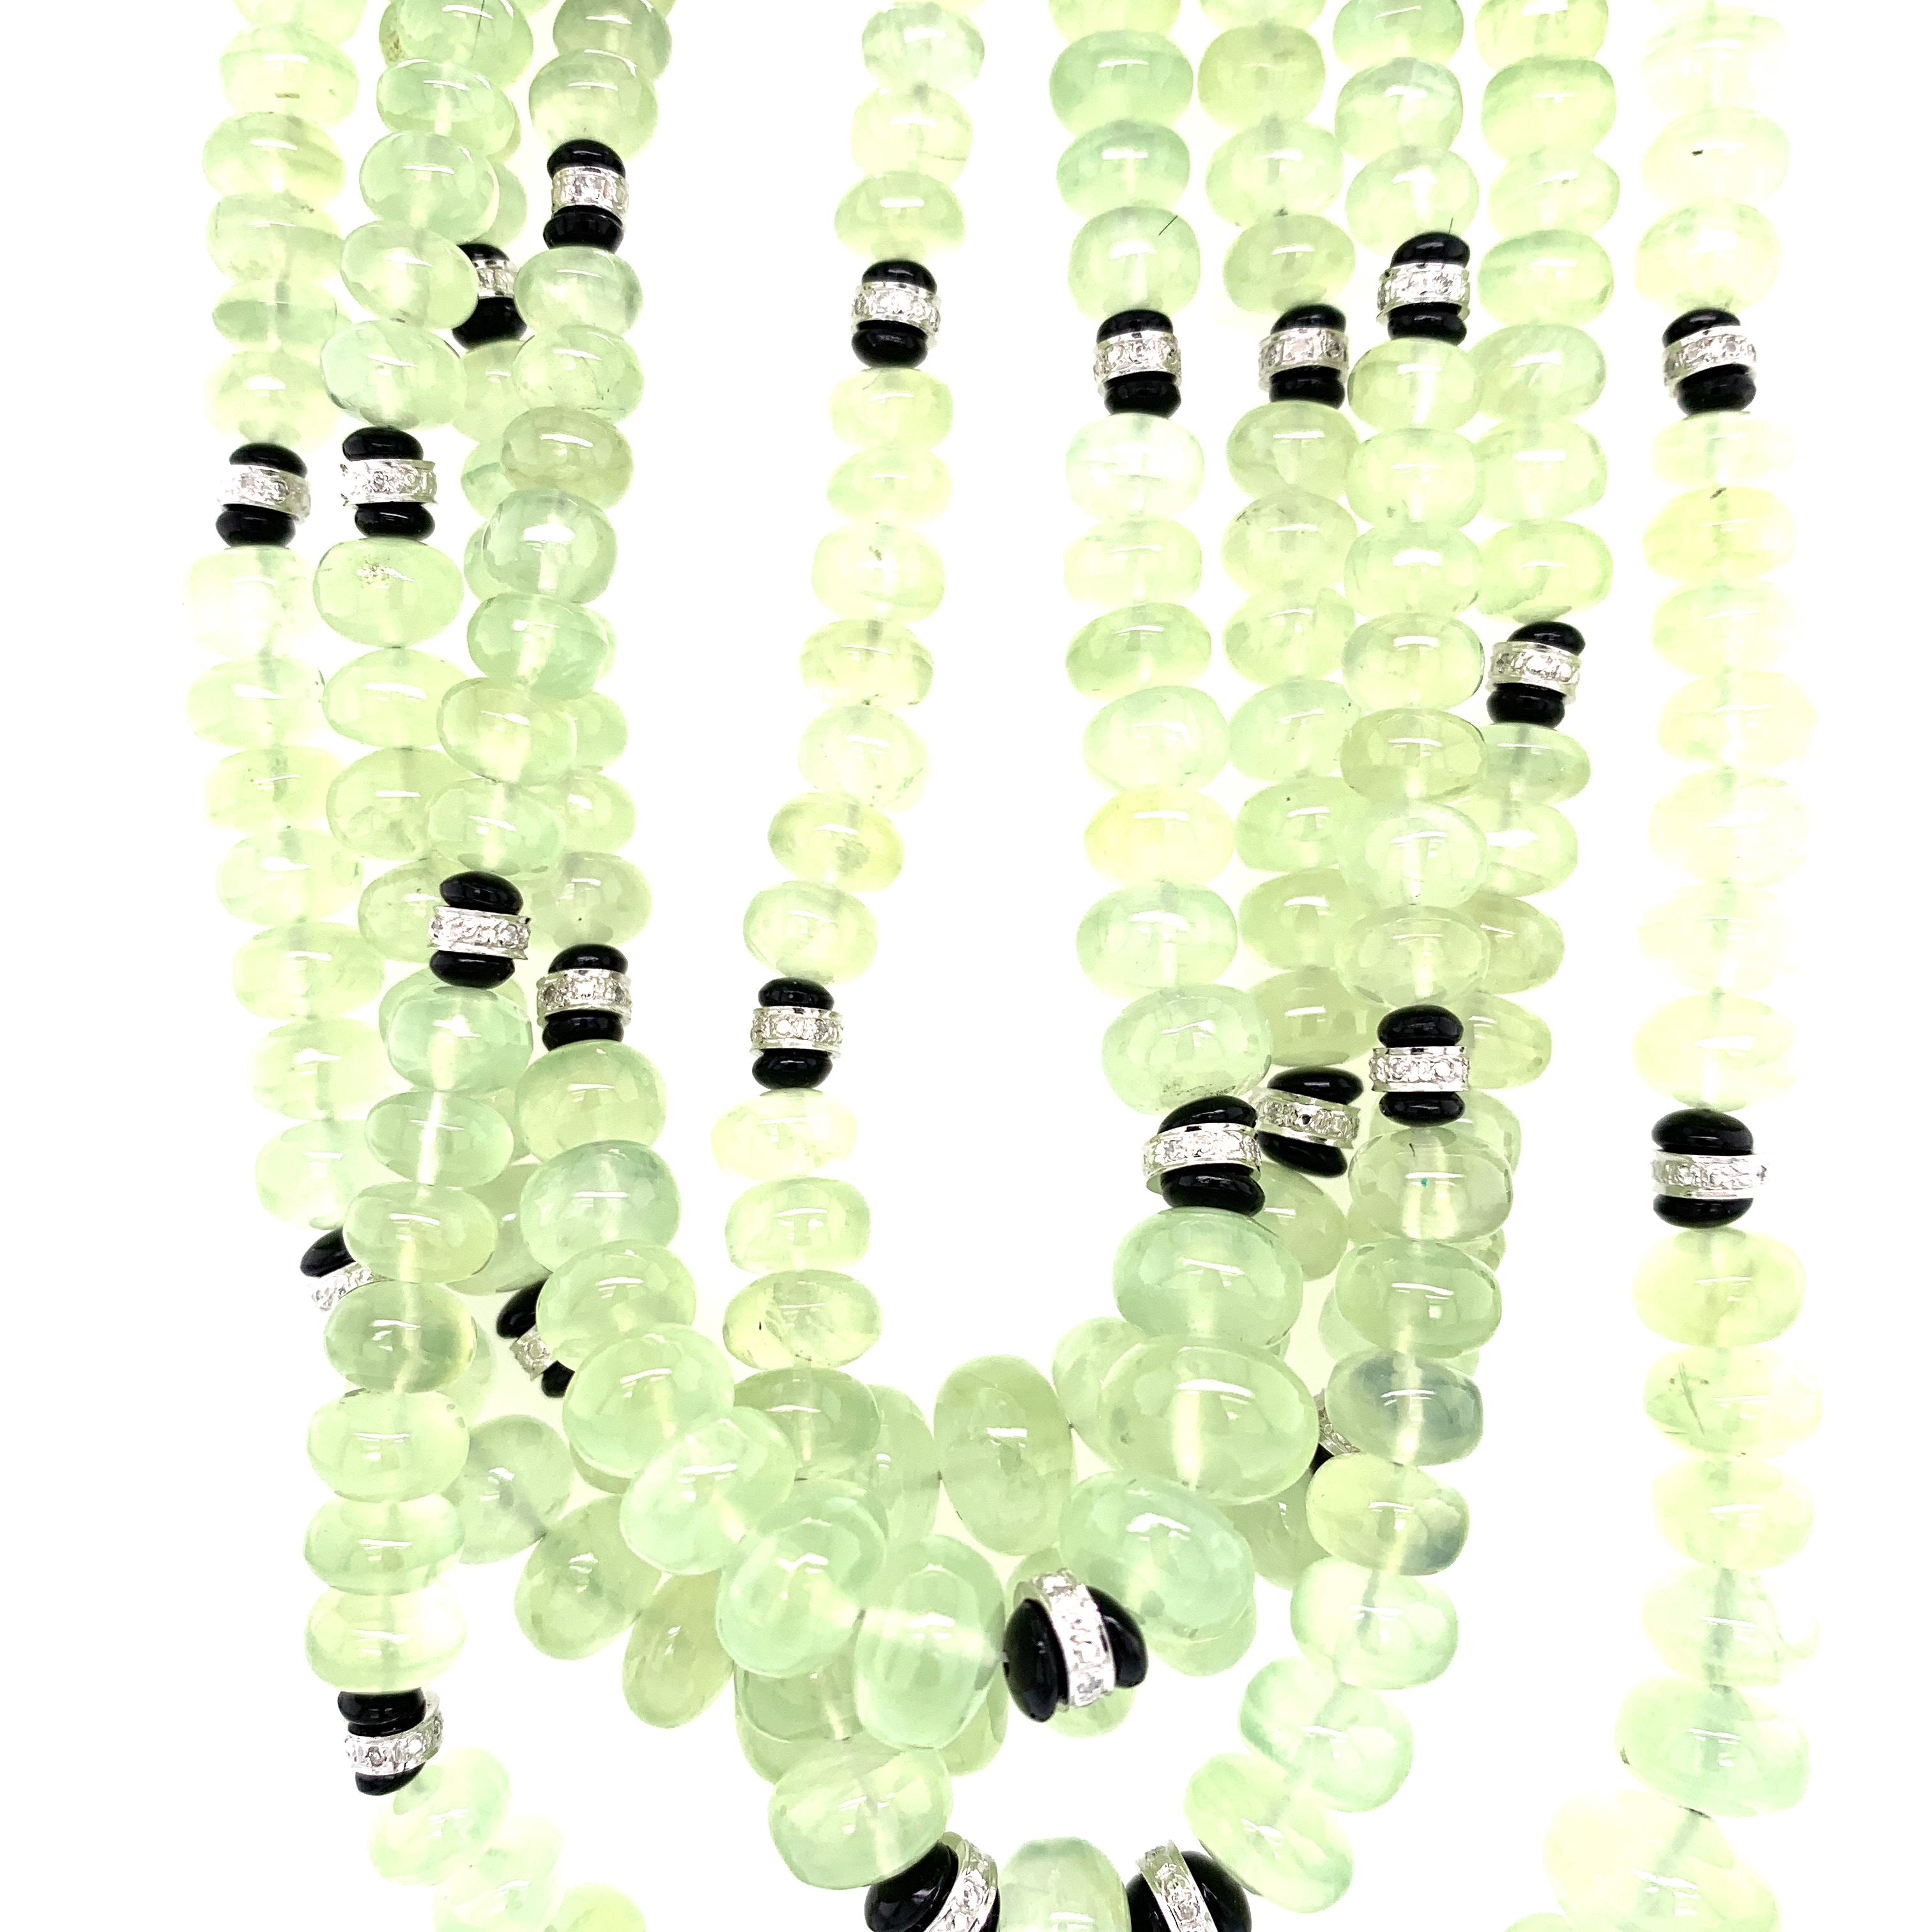 Grüne Prehnit-Perlen und weißer Diamant-Verschluss Gold Multi-Strand-Halskette :

Dieses ungewöhnliche und wunderschöne Collier besteht aus schwer zu findenden grünen Prehnit-Perlen mit einem Gewicht von 945,09 Karat, zwischen denen 50 weiße runde